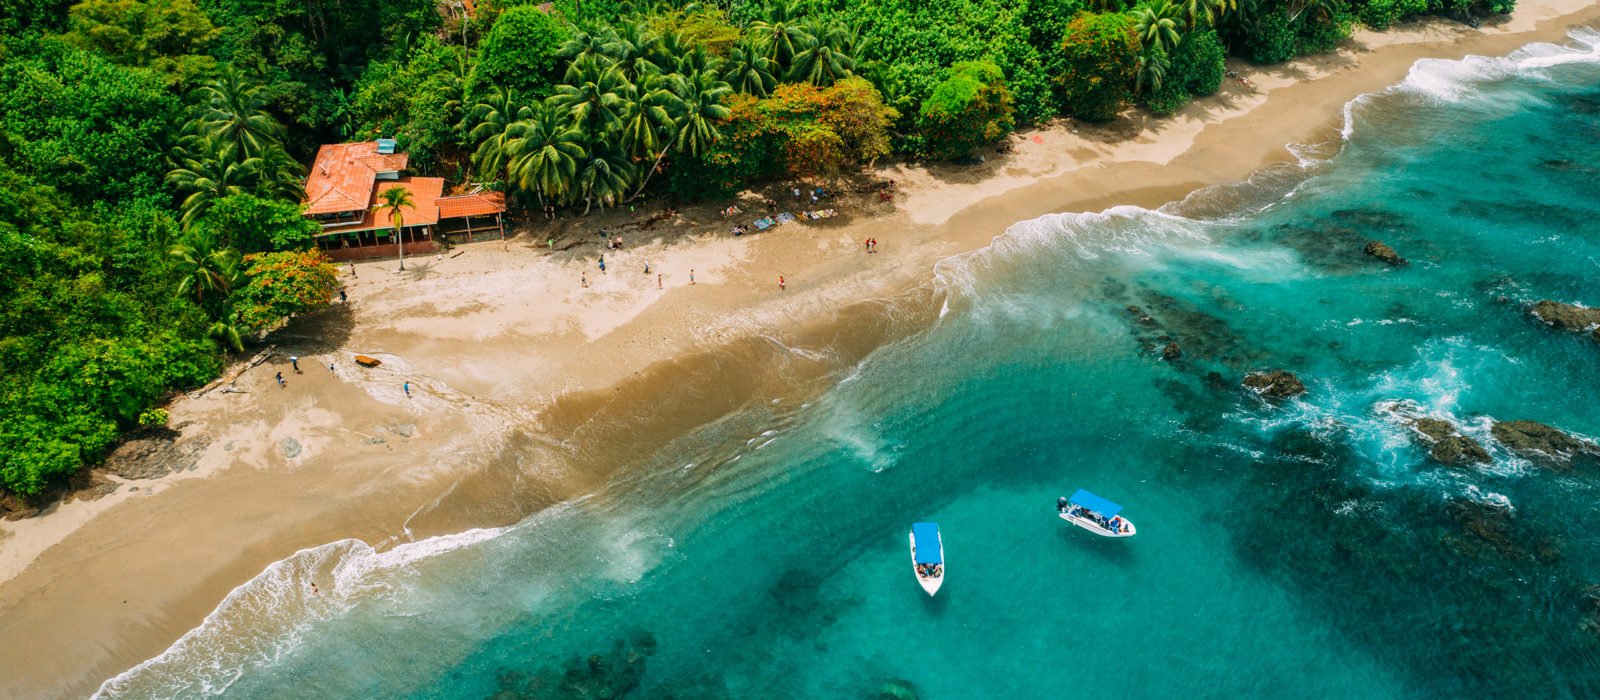 Aerial view of a tropical island with lush jungle coastline in Isla del Caño, Costa Rica